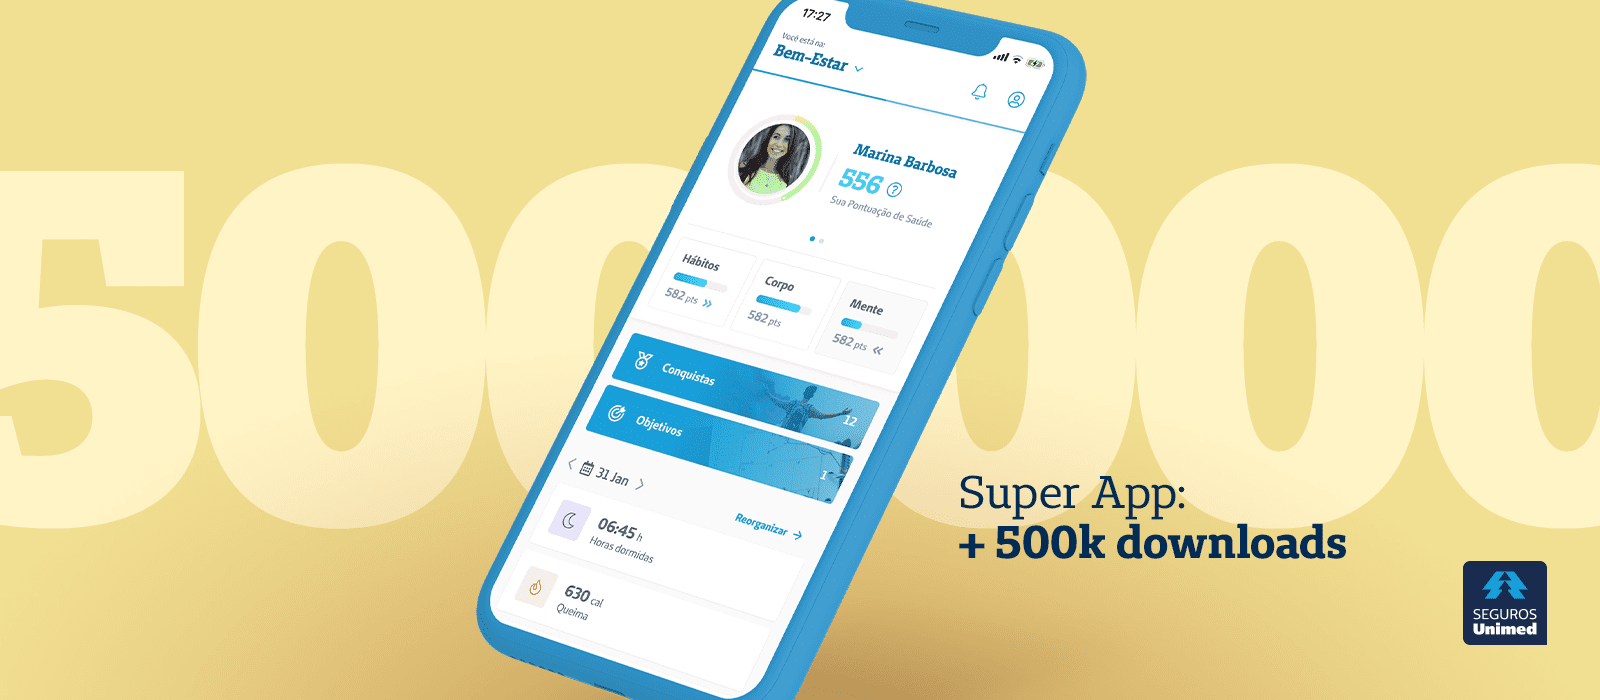 Seguros Unimed Super App - 500K downloads